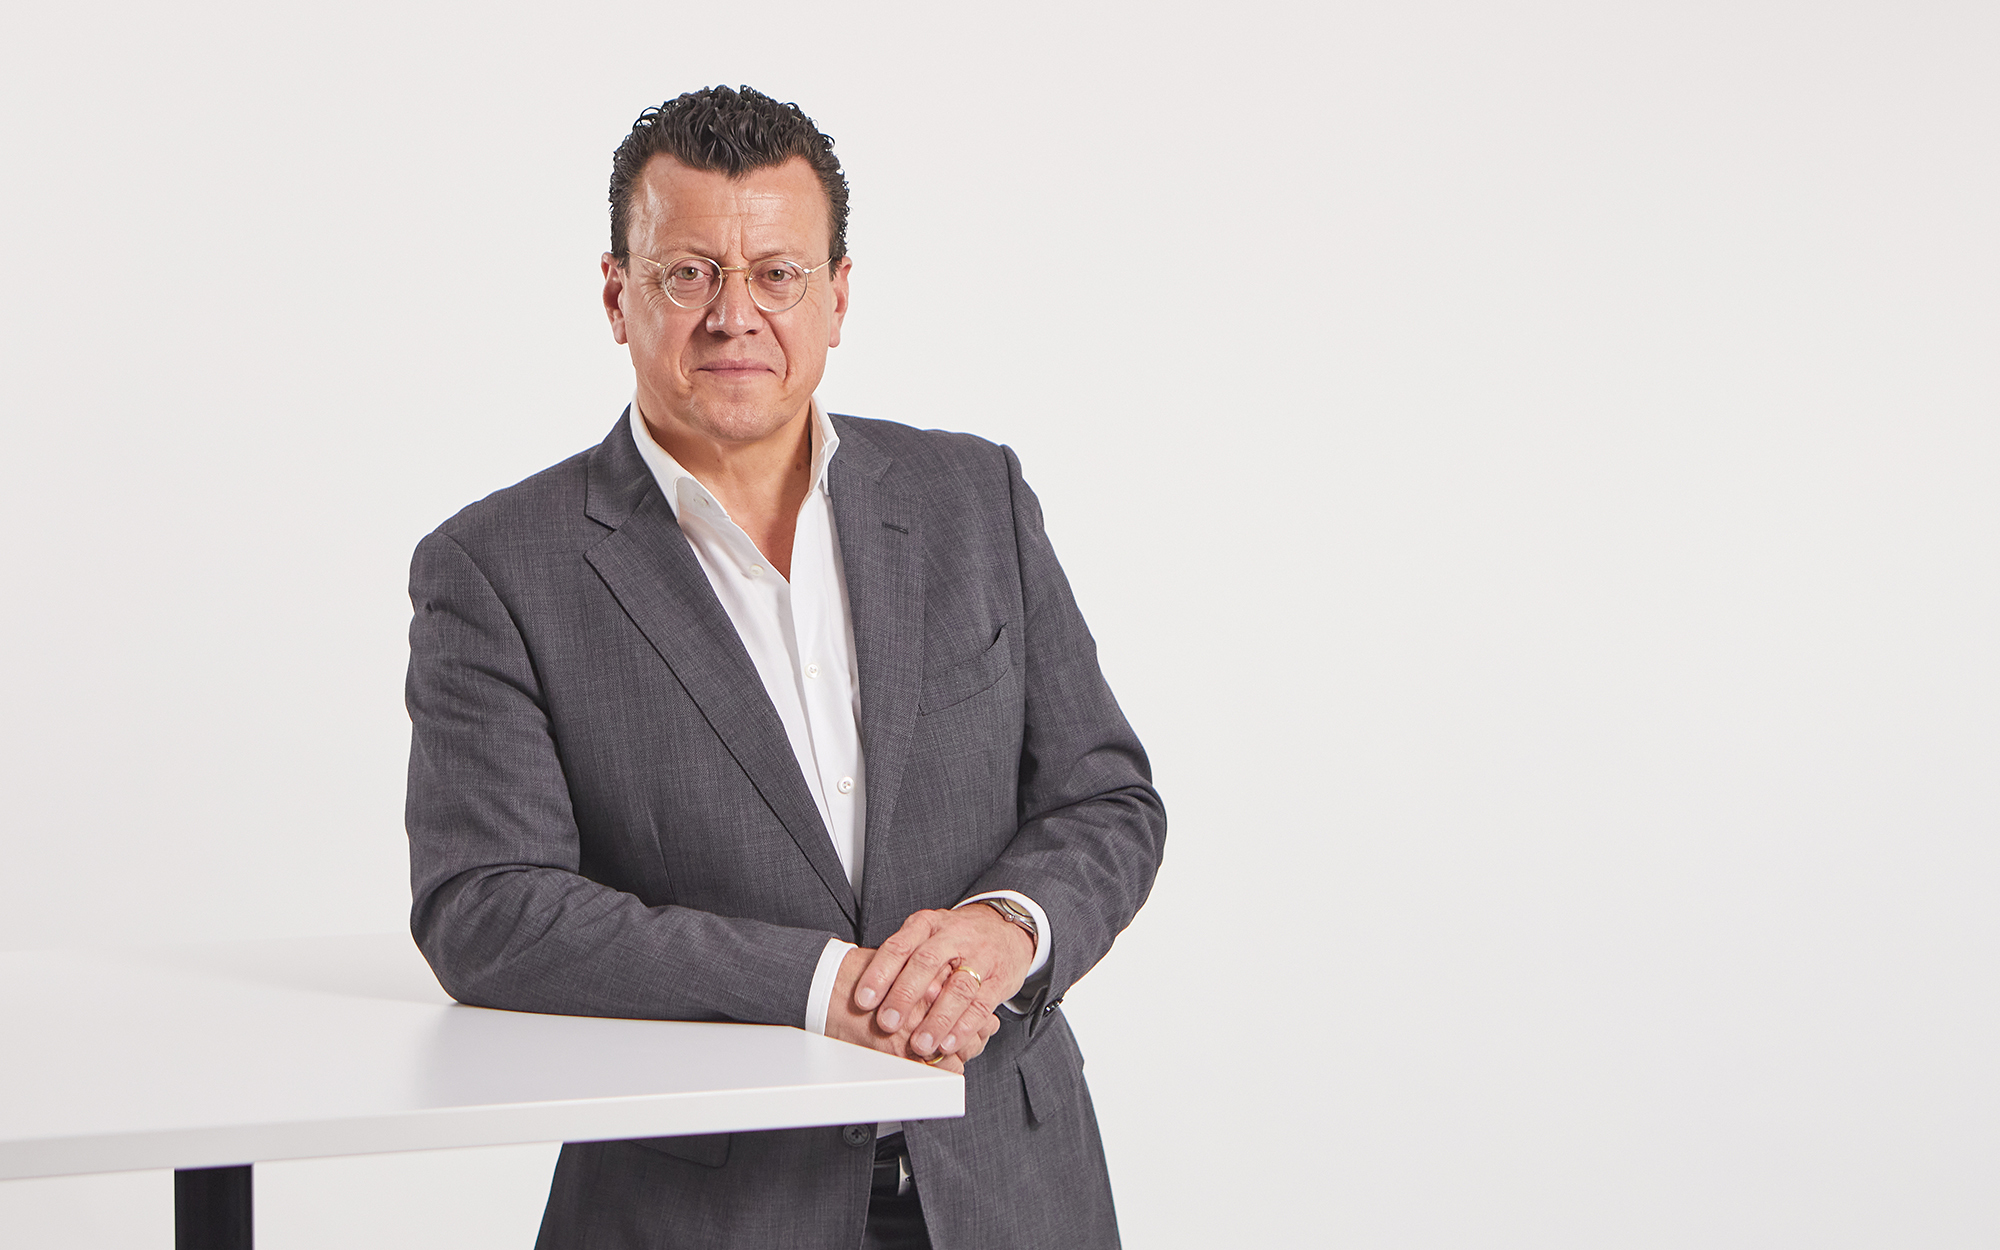 Dr. Steven Althaus leitet seit 2020 als CEO die Geschäfte der Grenzebach Gruppe mit Sitz in Hamlar.